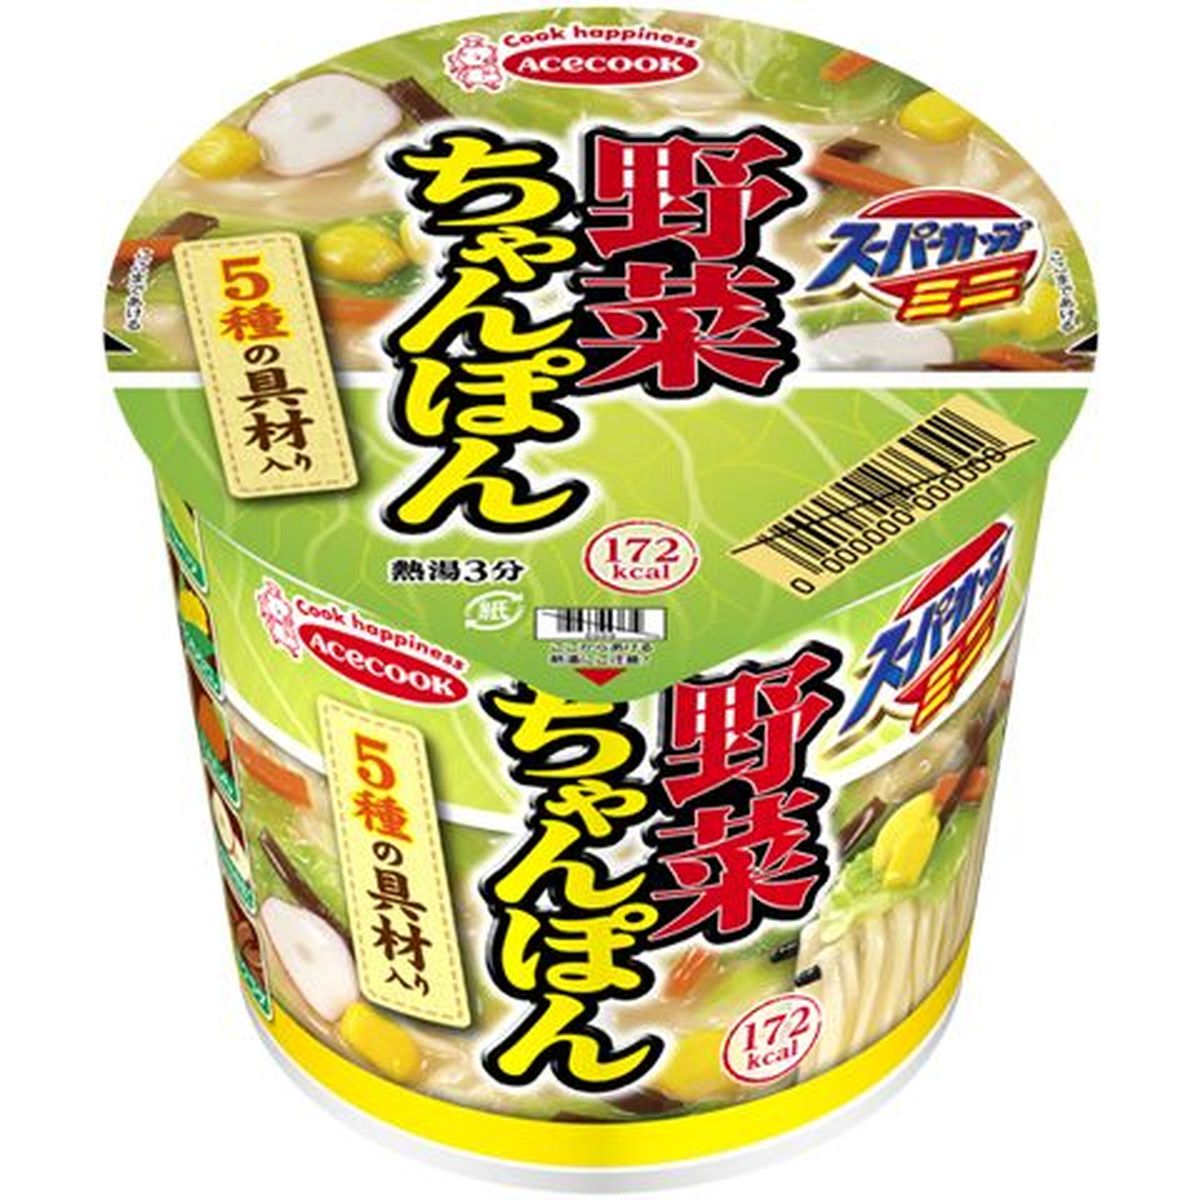 【12個入リ】エースコック スーパーカップミニ野菜チャンポン 42g